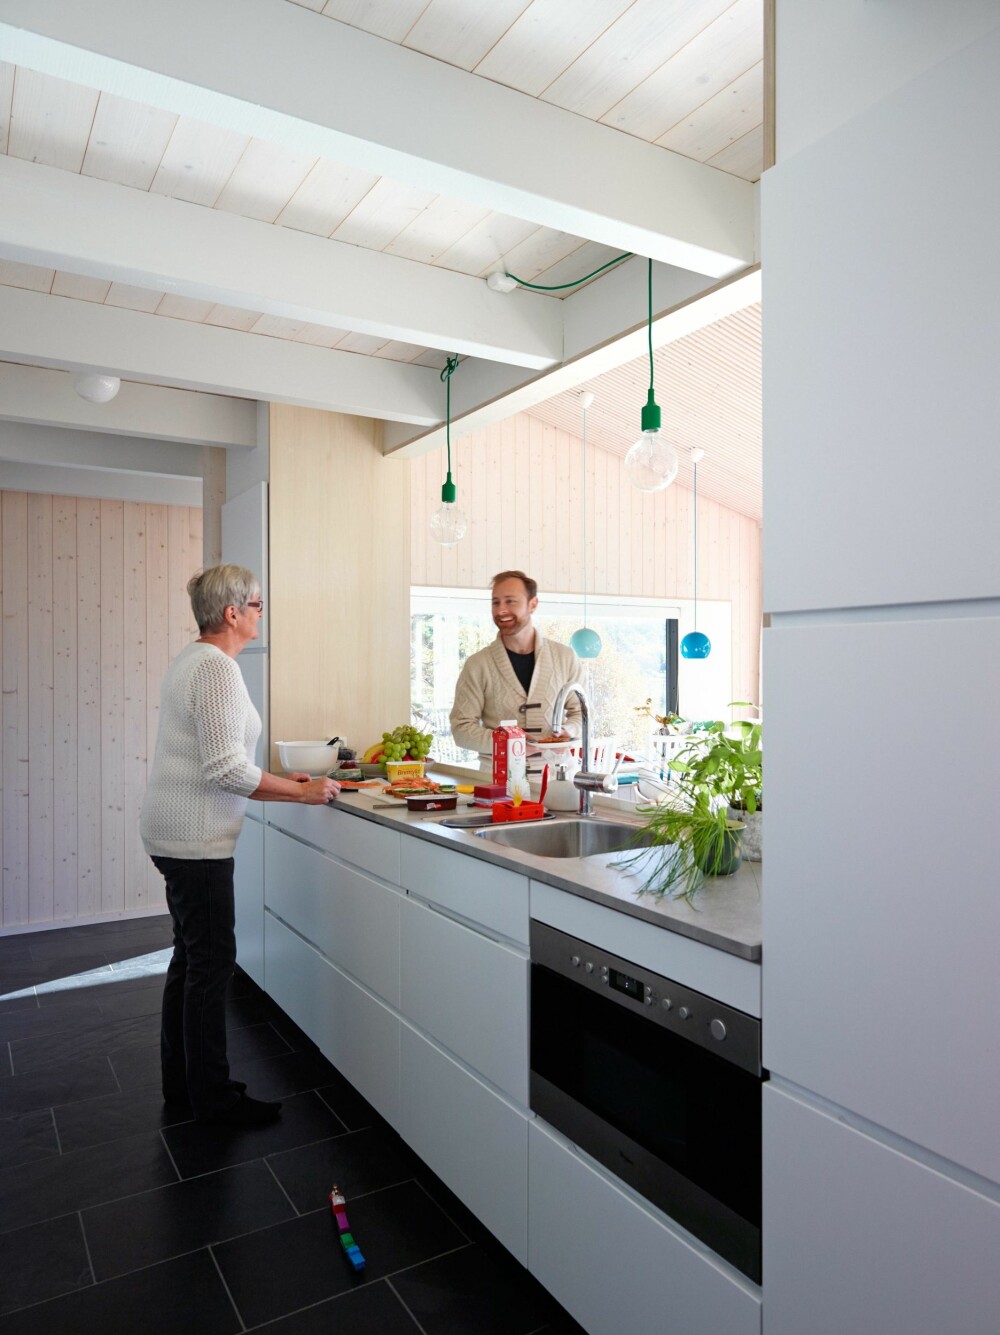 PØLSEBODEN: Åpning mot
stuen gjør at kjøkkenet fungerer som en real pølsebod når storfamilien samles. Med på kjøpet følger en flott sjøutsikt. Innredning fra Kvik. Benkeplate av grå laminat. (FOTO: Ragnar Hartvig) 